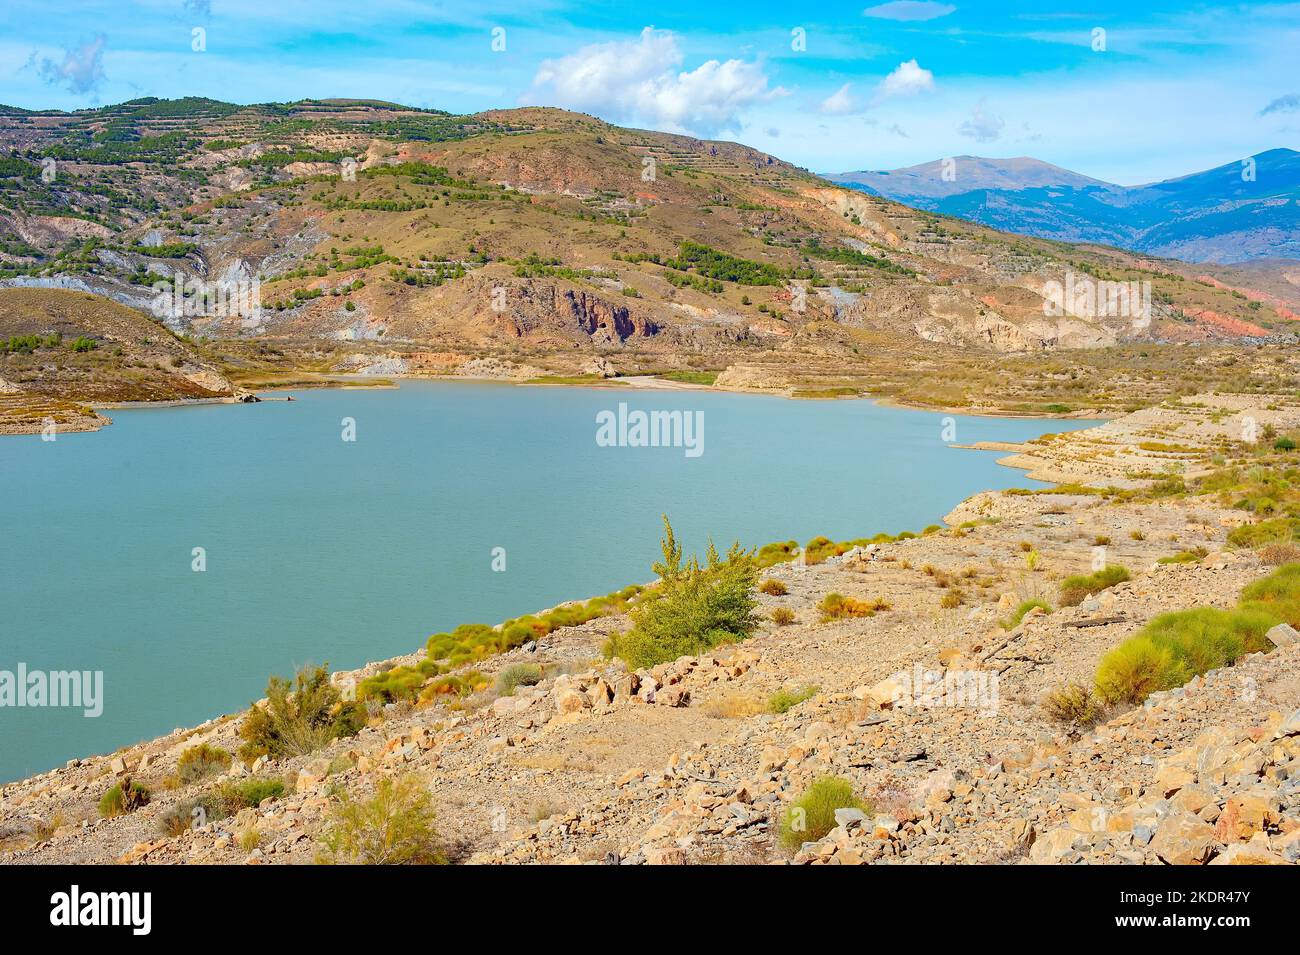 Paysage de montagne pittoresque avec réservoir d'eau, Andalousie, Espagne Banque D'Images